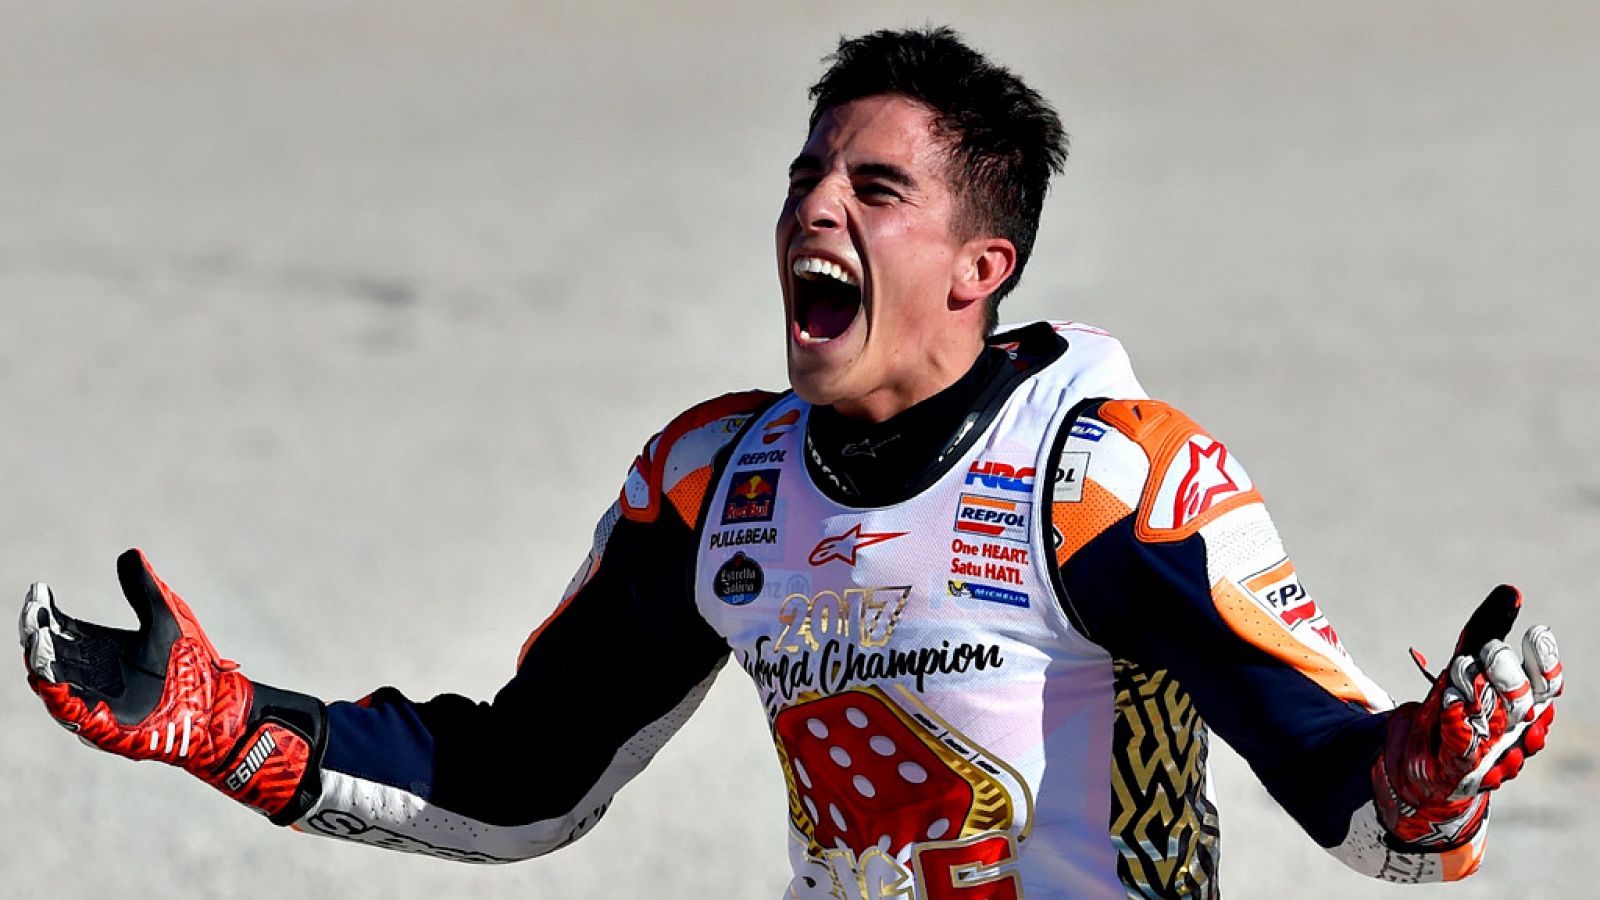 El español Marc Márquez (Repsol Honda RC 213 V), se ha proclamado campeón del mundo de MotoGP, su cuarto título mundial en la categoría reina y el sexto en ocho años, para acumular un palmarés deportivo que está a la altura de los más más grandes de